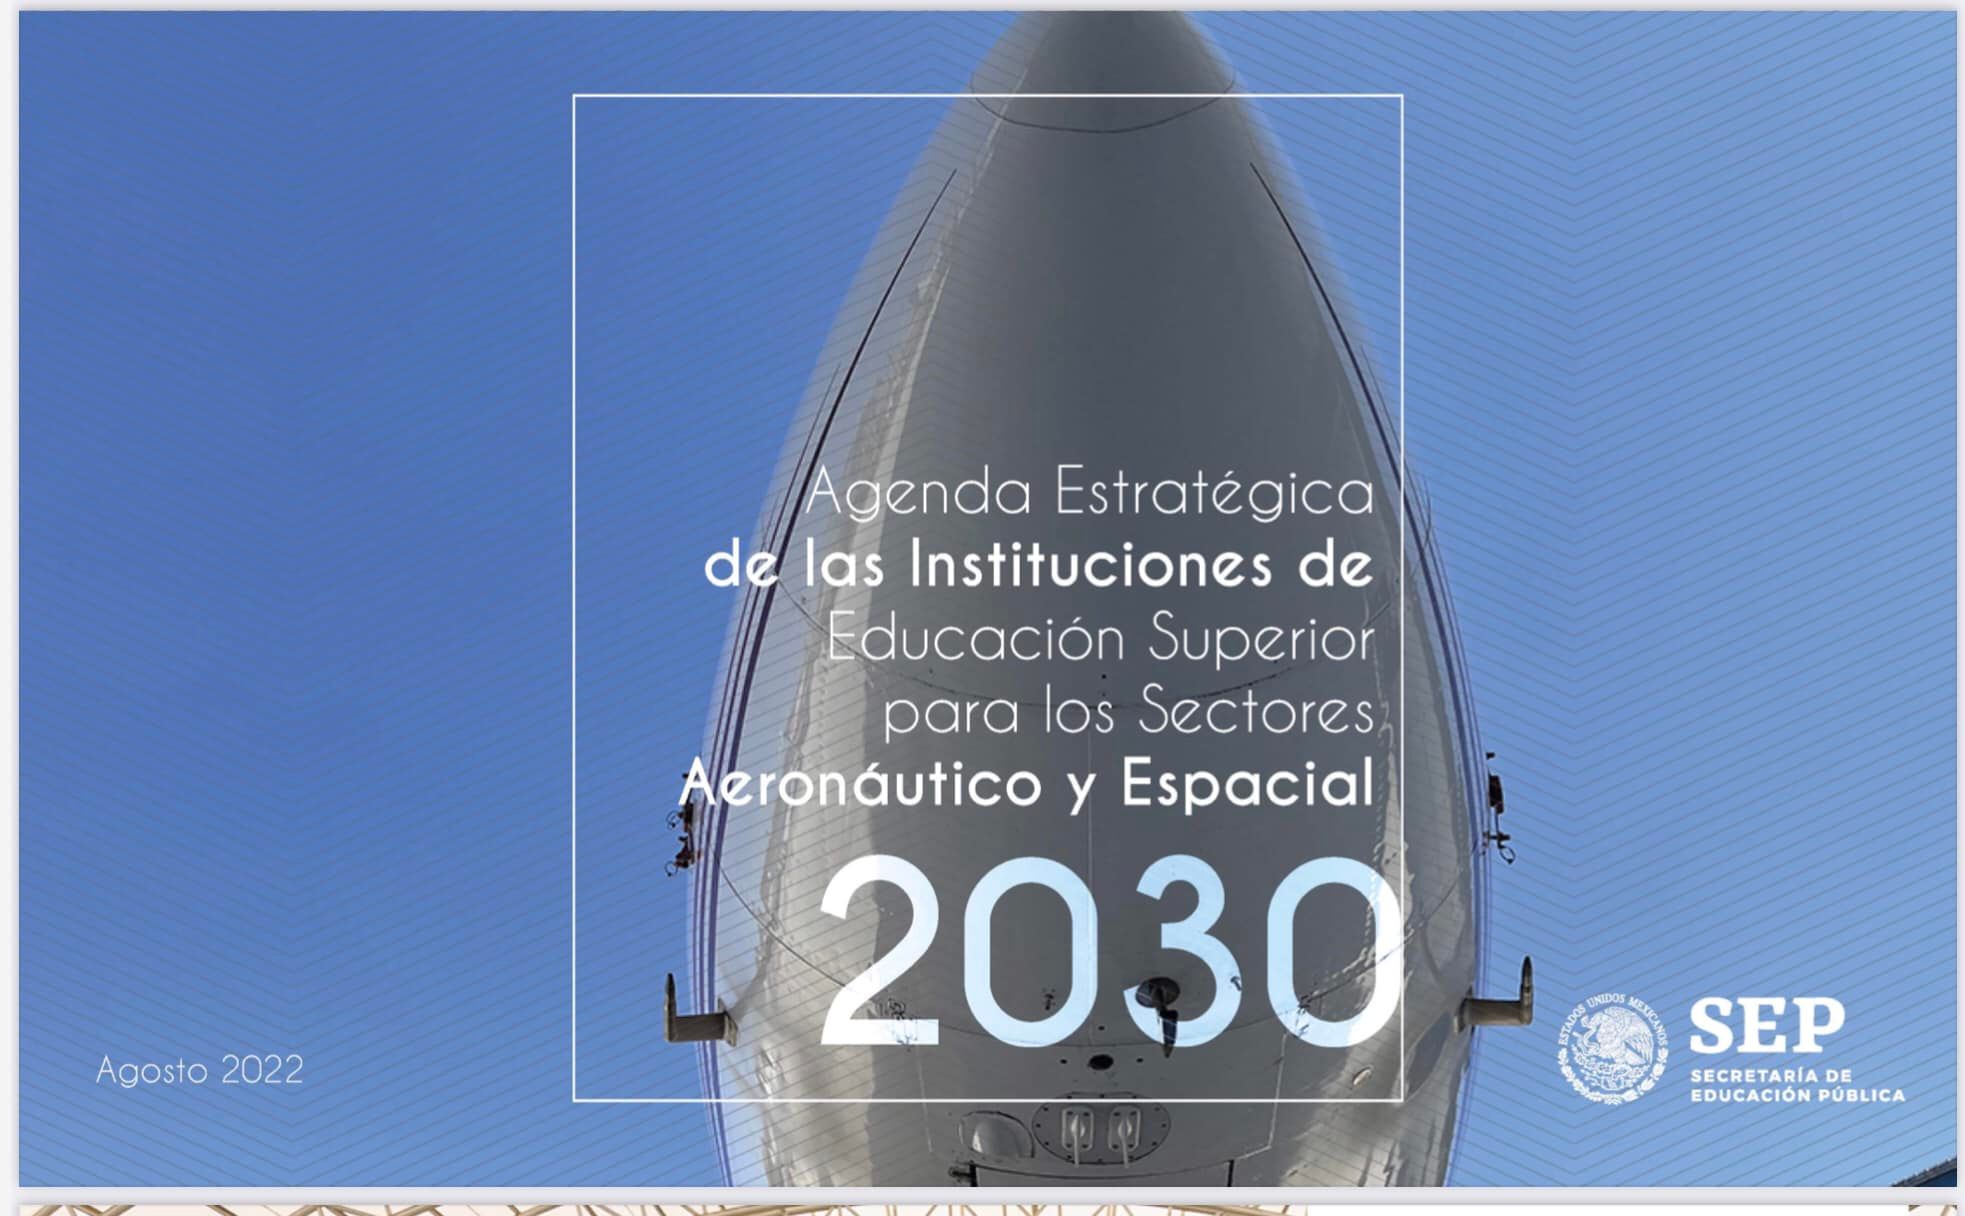 Evento de presentación de la agenda estratégica de las instituciones de educación superior para los sectores Aeronáutico y Espacial 2030